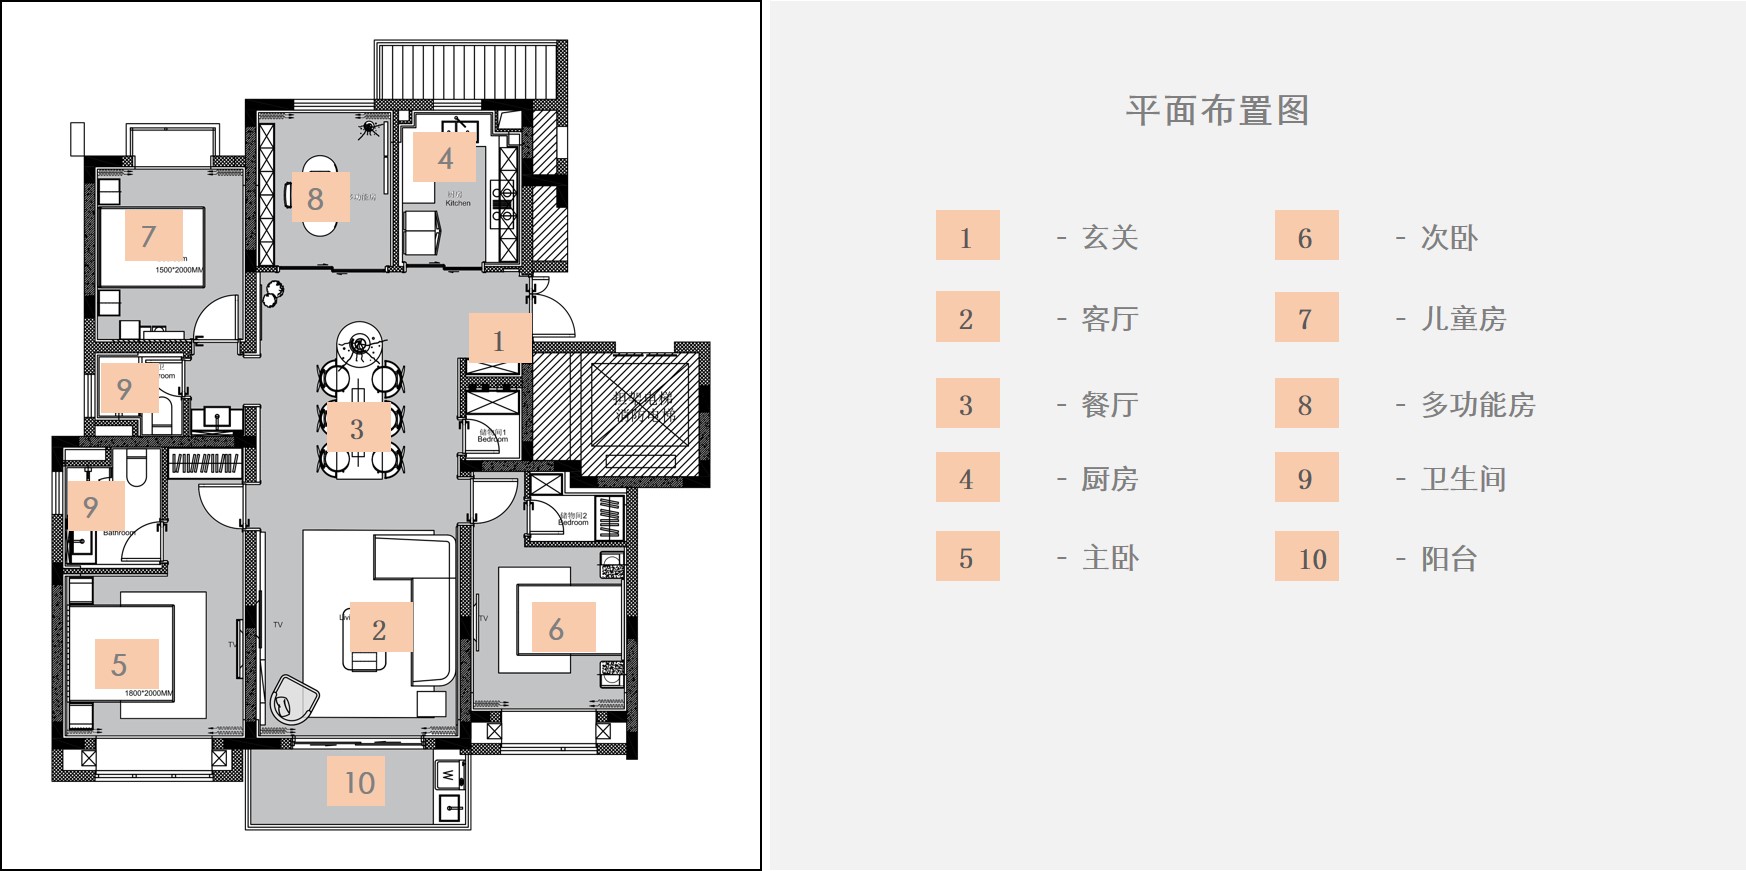 樣板間設計,樣板間住宅設計,軟裝設計,樣板間軟裝設計,上海軟裝設計,上海樣板間設計,上海陽光城康橋美樂樣板間,大樸設計